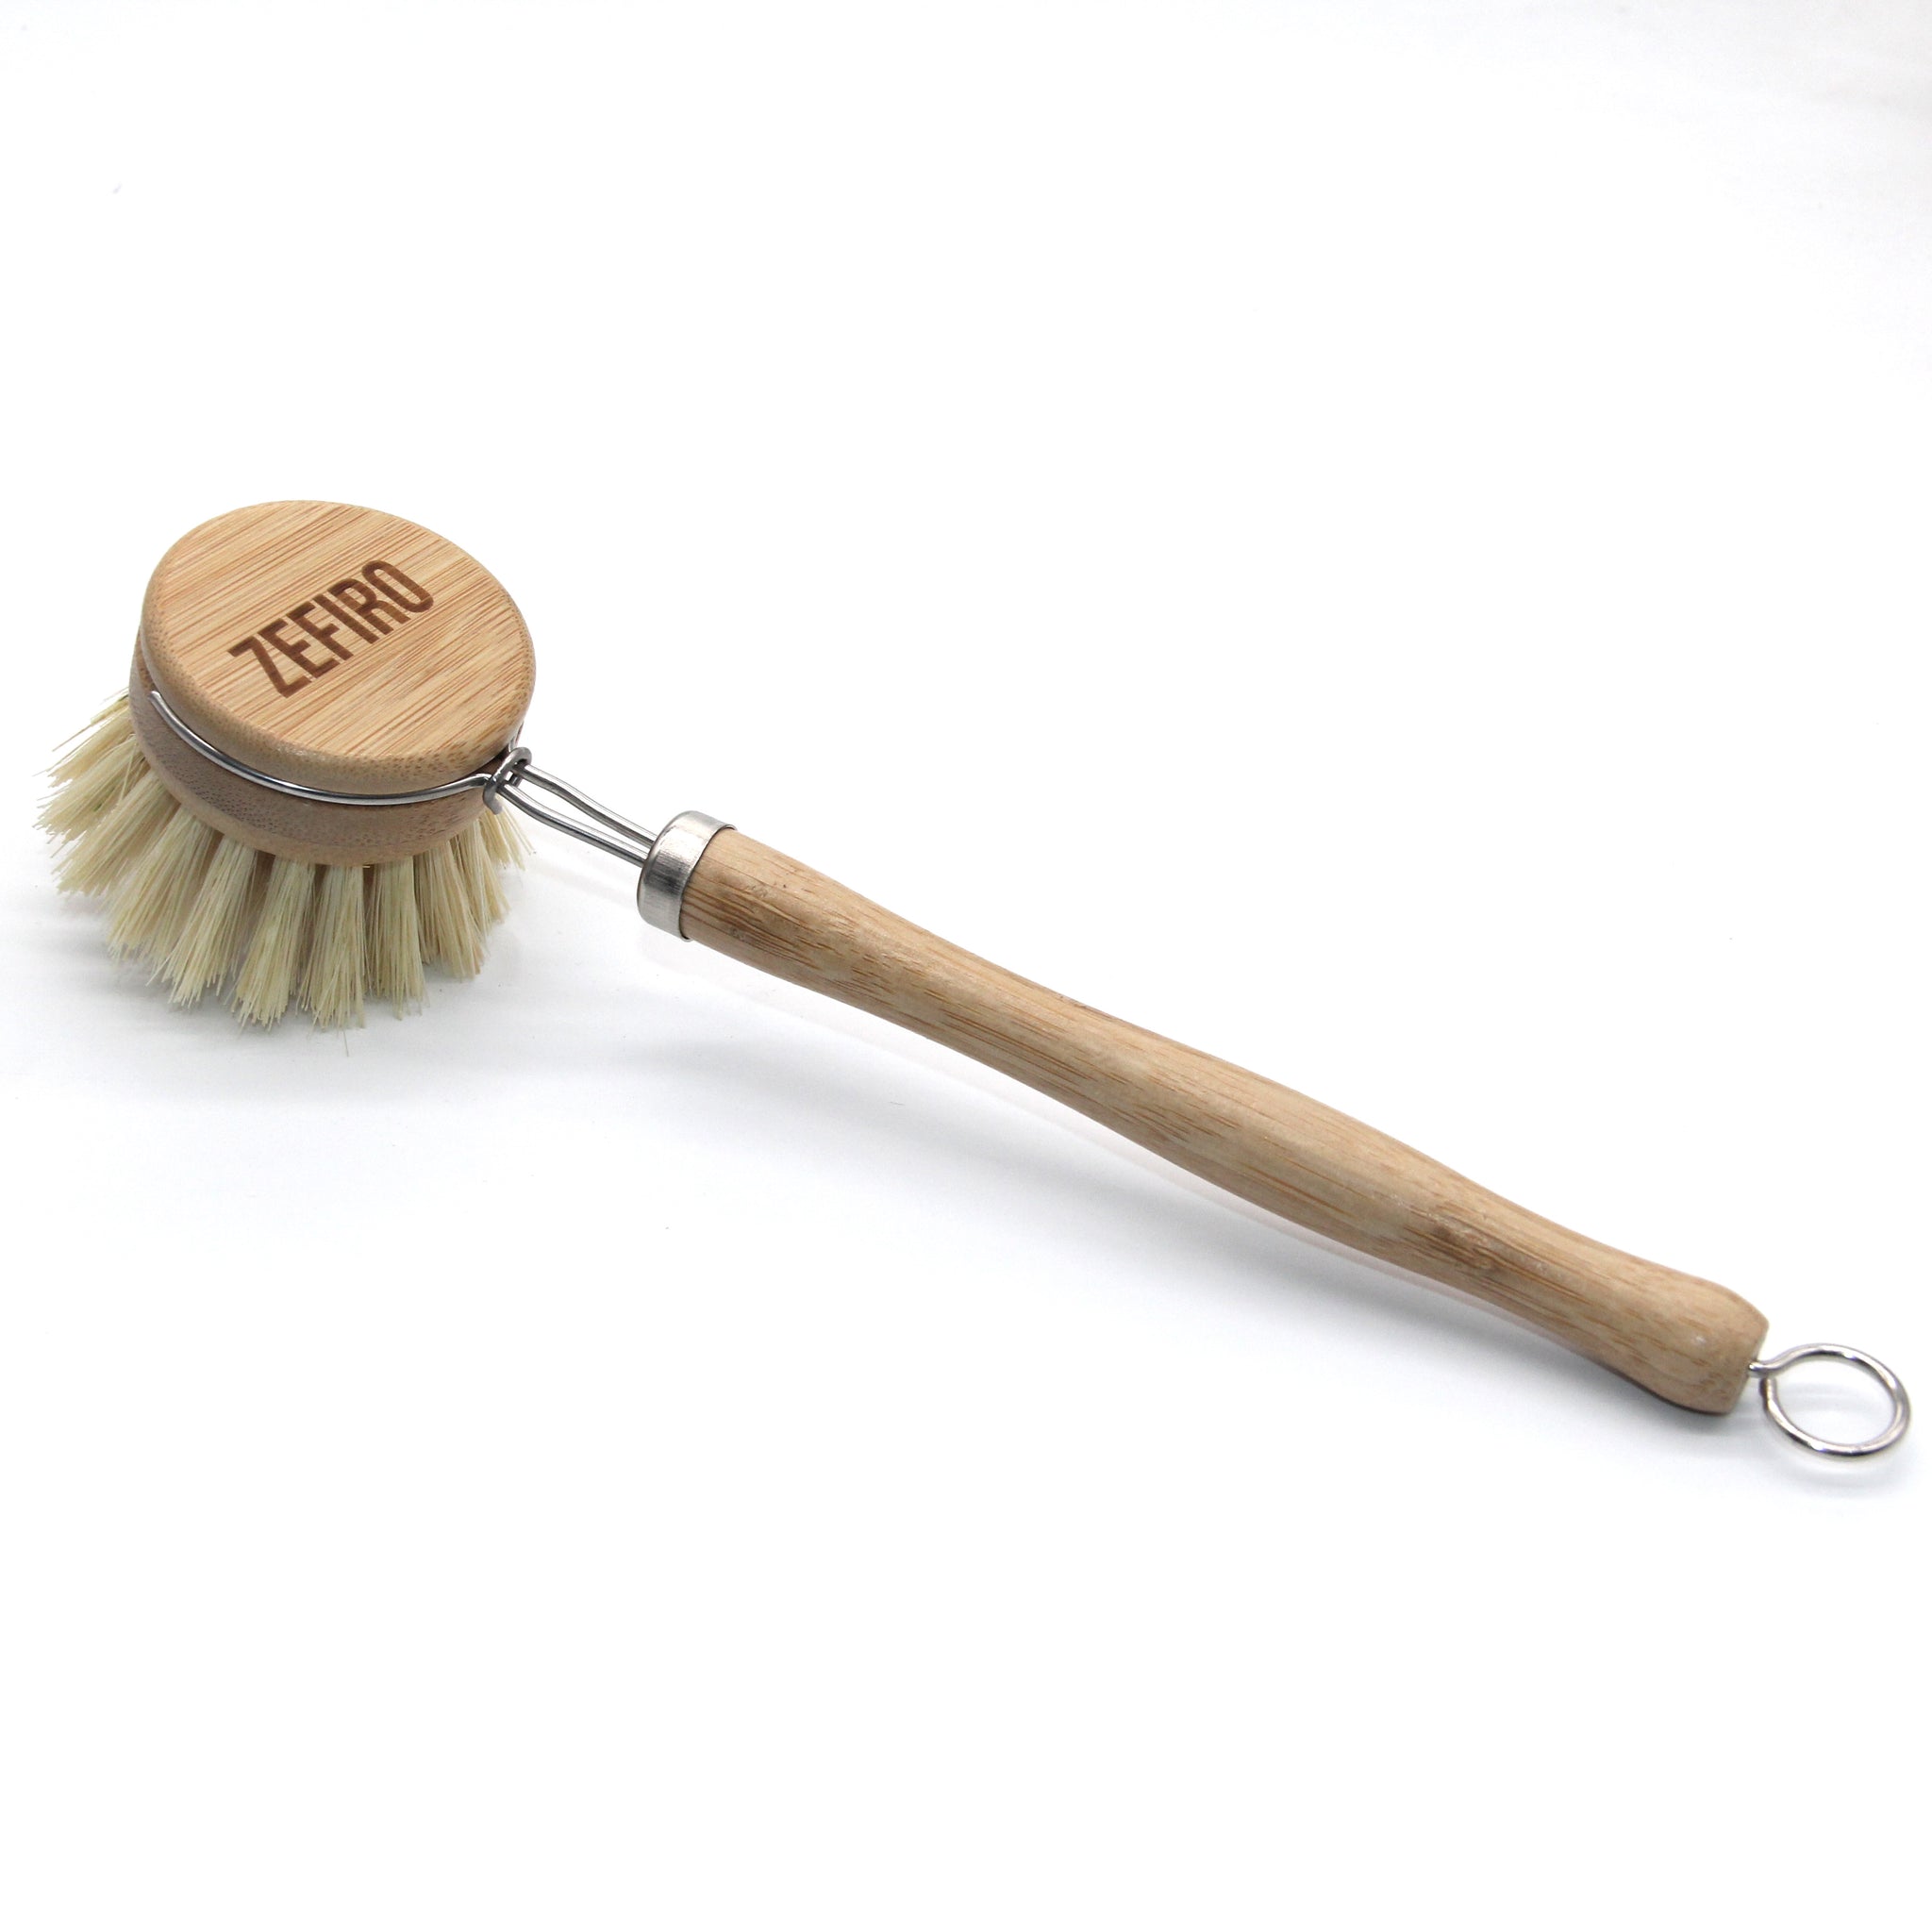 Dry Brush Set – Zefiro Chicago